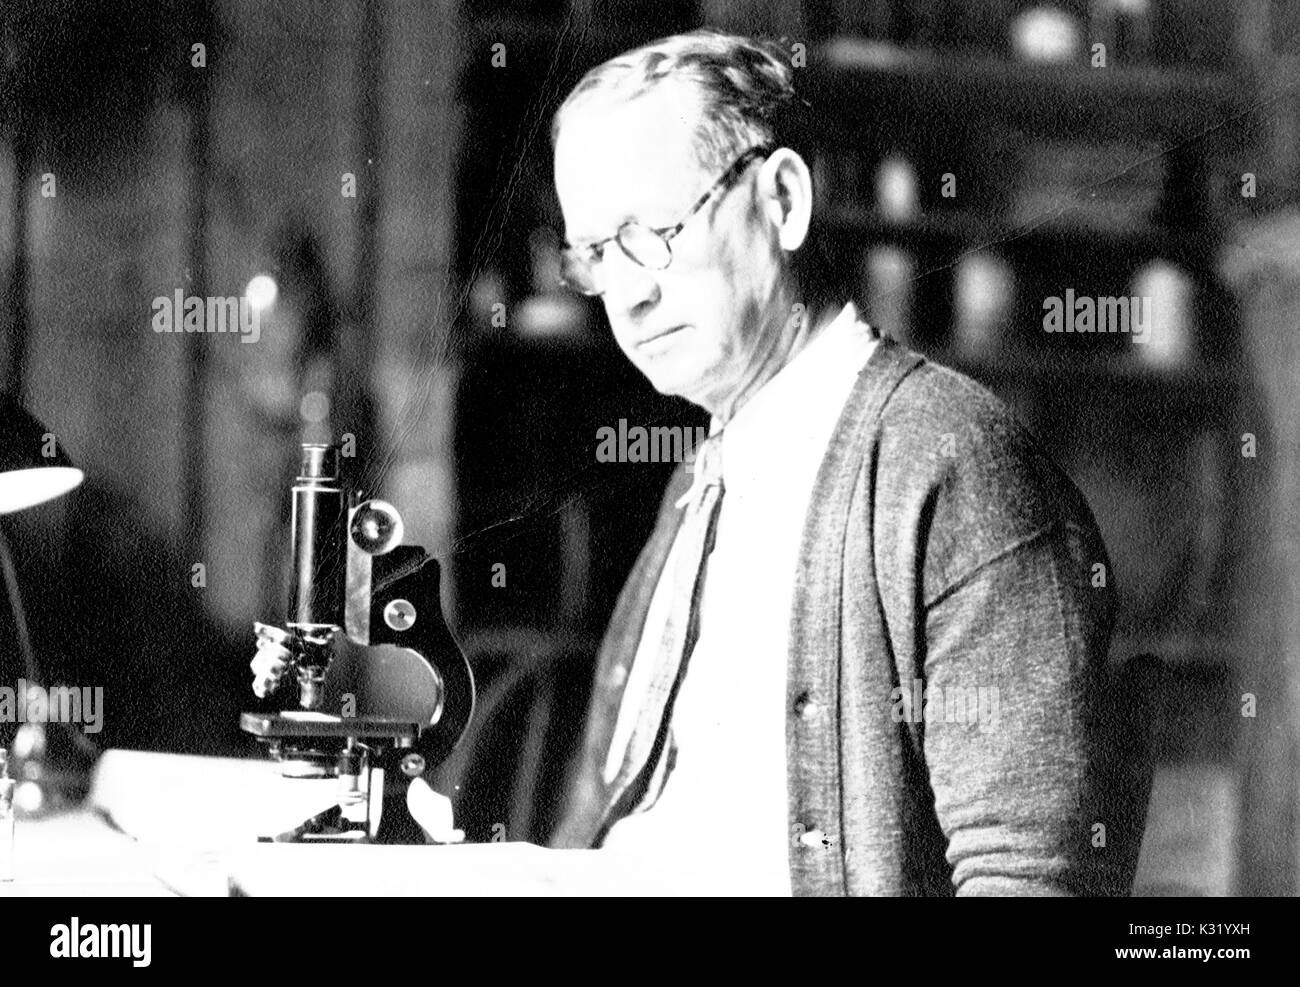 Candide sépia photo de Robert Erwin Coker, zoologiste et fellow et professeur de biologie à l'Université Johns Hopkins, debout sur un banc de laboratoire avec microscope, porter des lunettes, une cravate, et Cardigan, Baltimore, Maryland, 1929. Banque D'Images